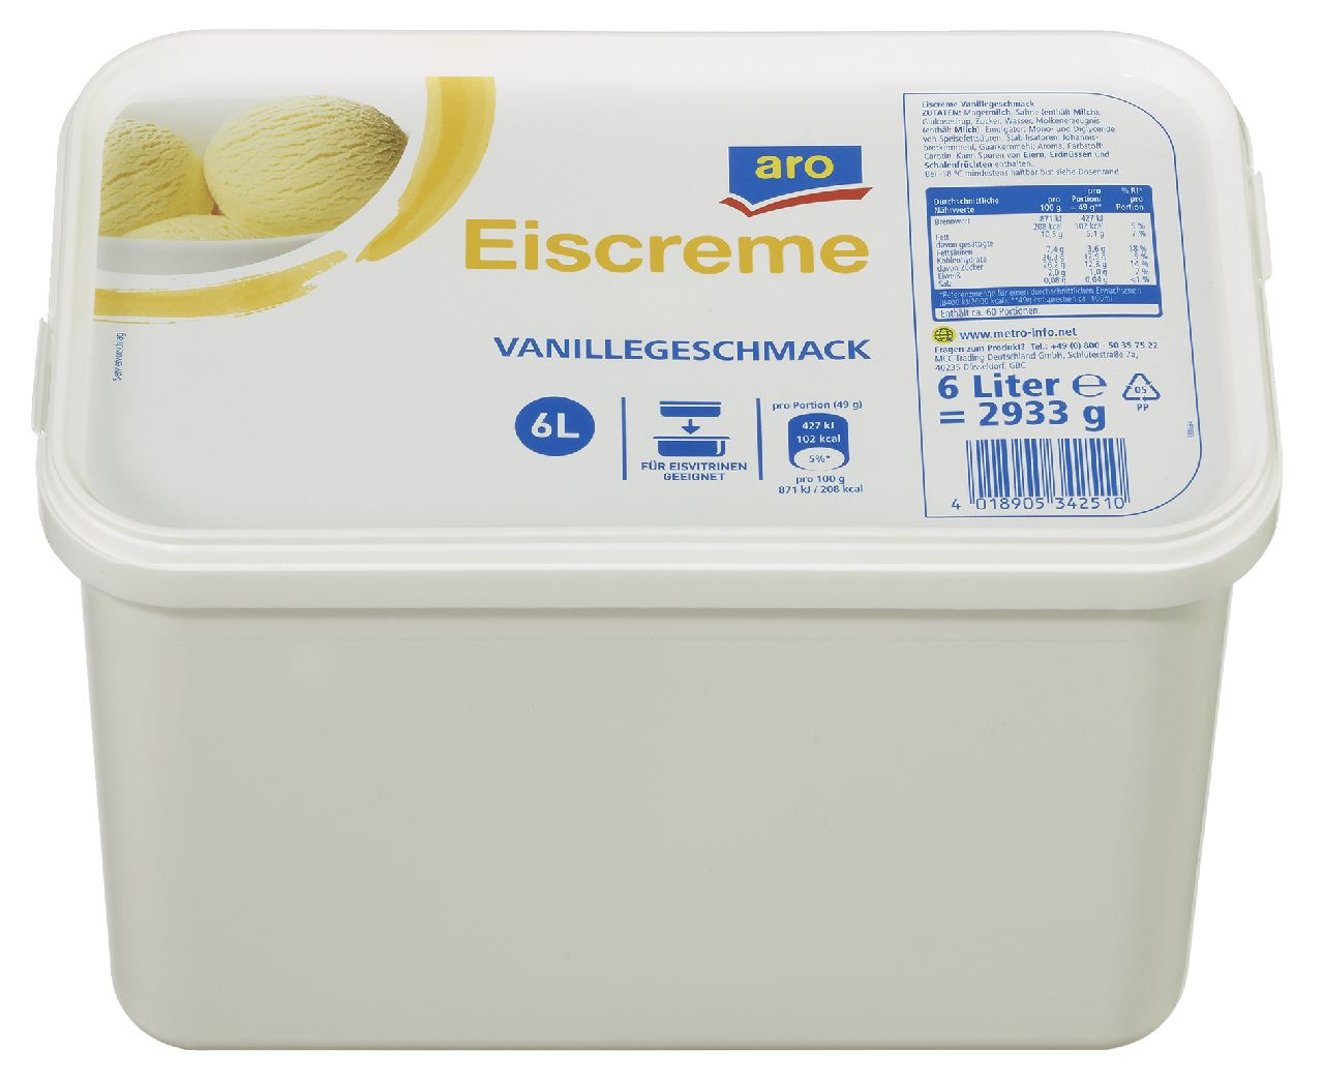 aro - Eiscreme Vanillegeschmack tiefgefroren - 6 l Packung